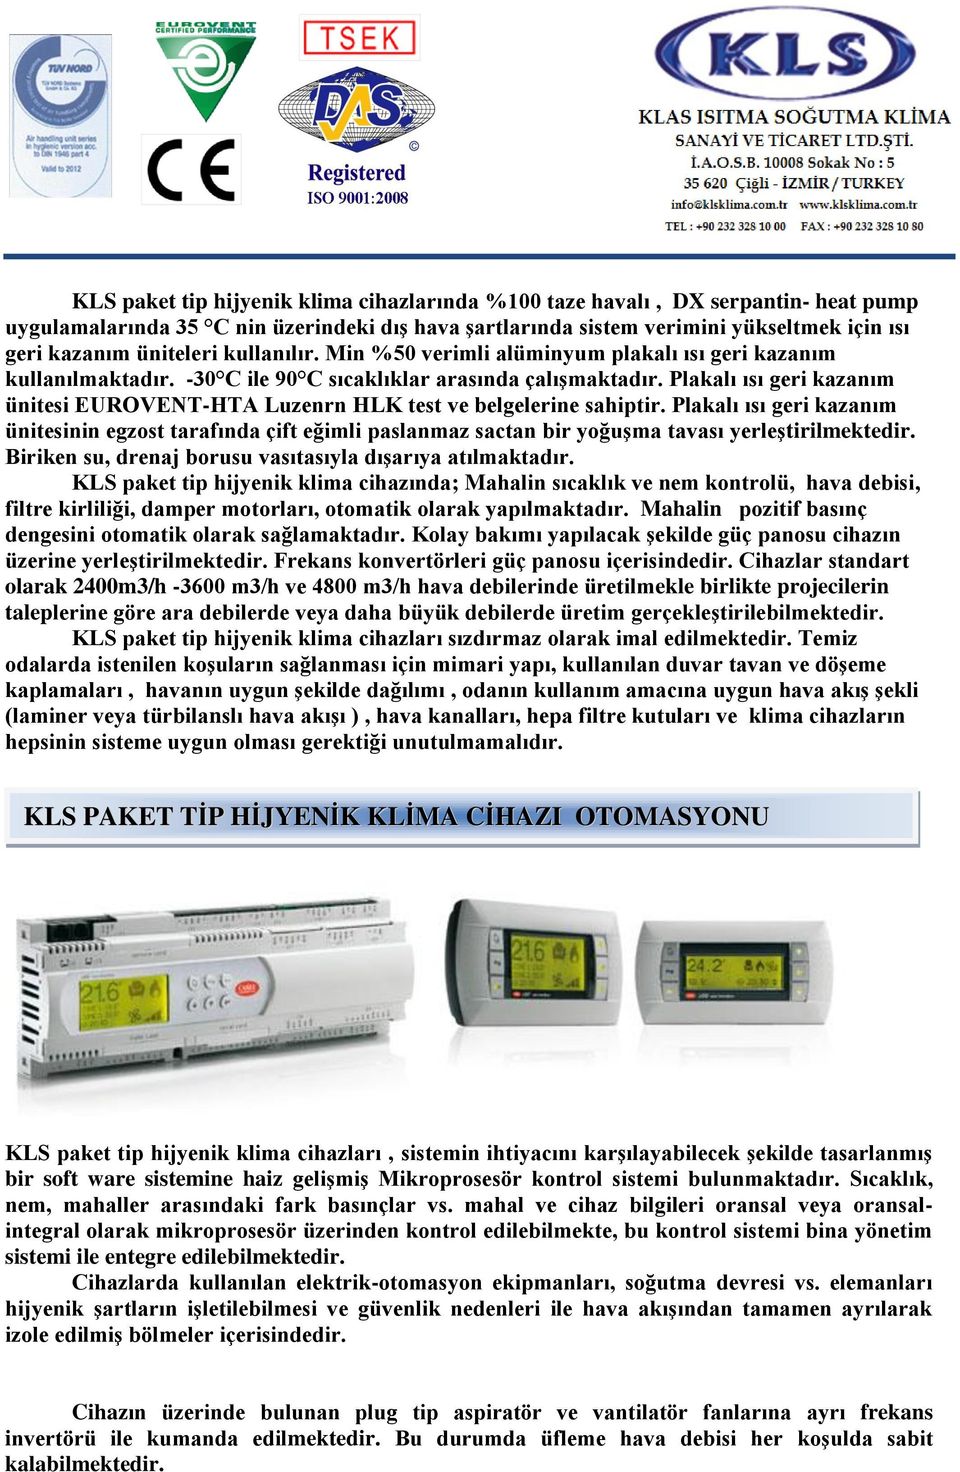 Plakalı ısı geri kazanım ünitesi EUROVENT-HTA Luzenrn HLK test ve belgelerine sahiptir.